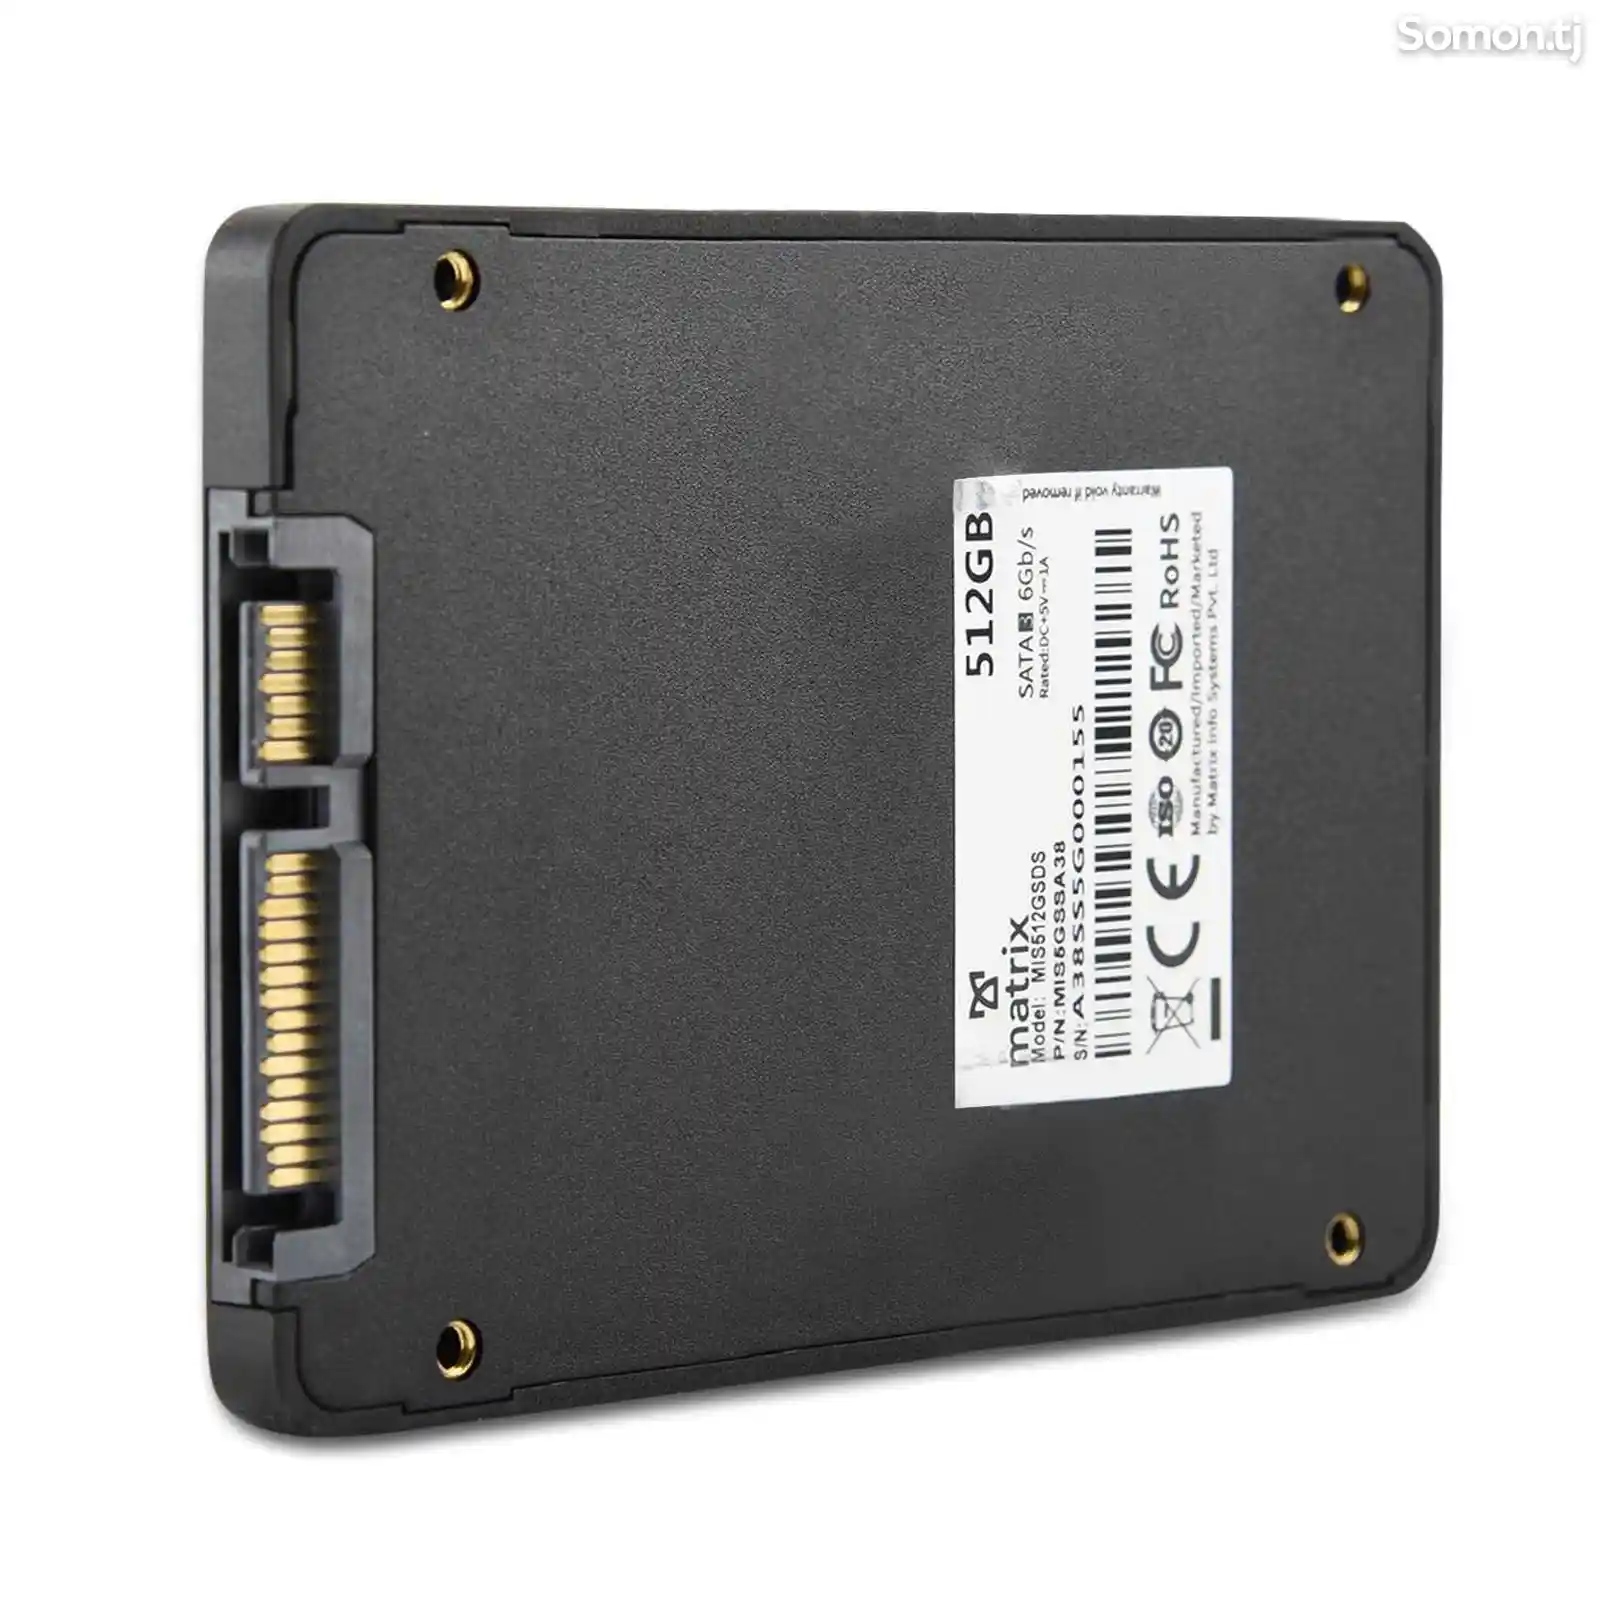 SSD Matrix 512GB 3D Nand Flash-4